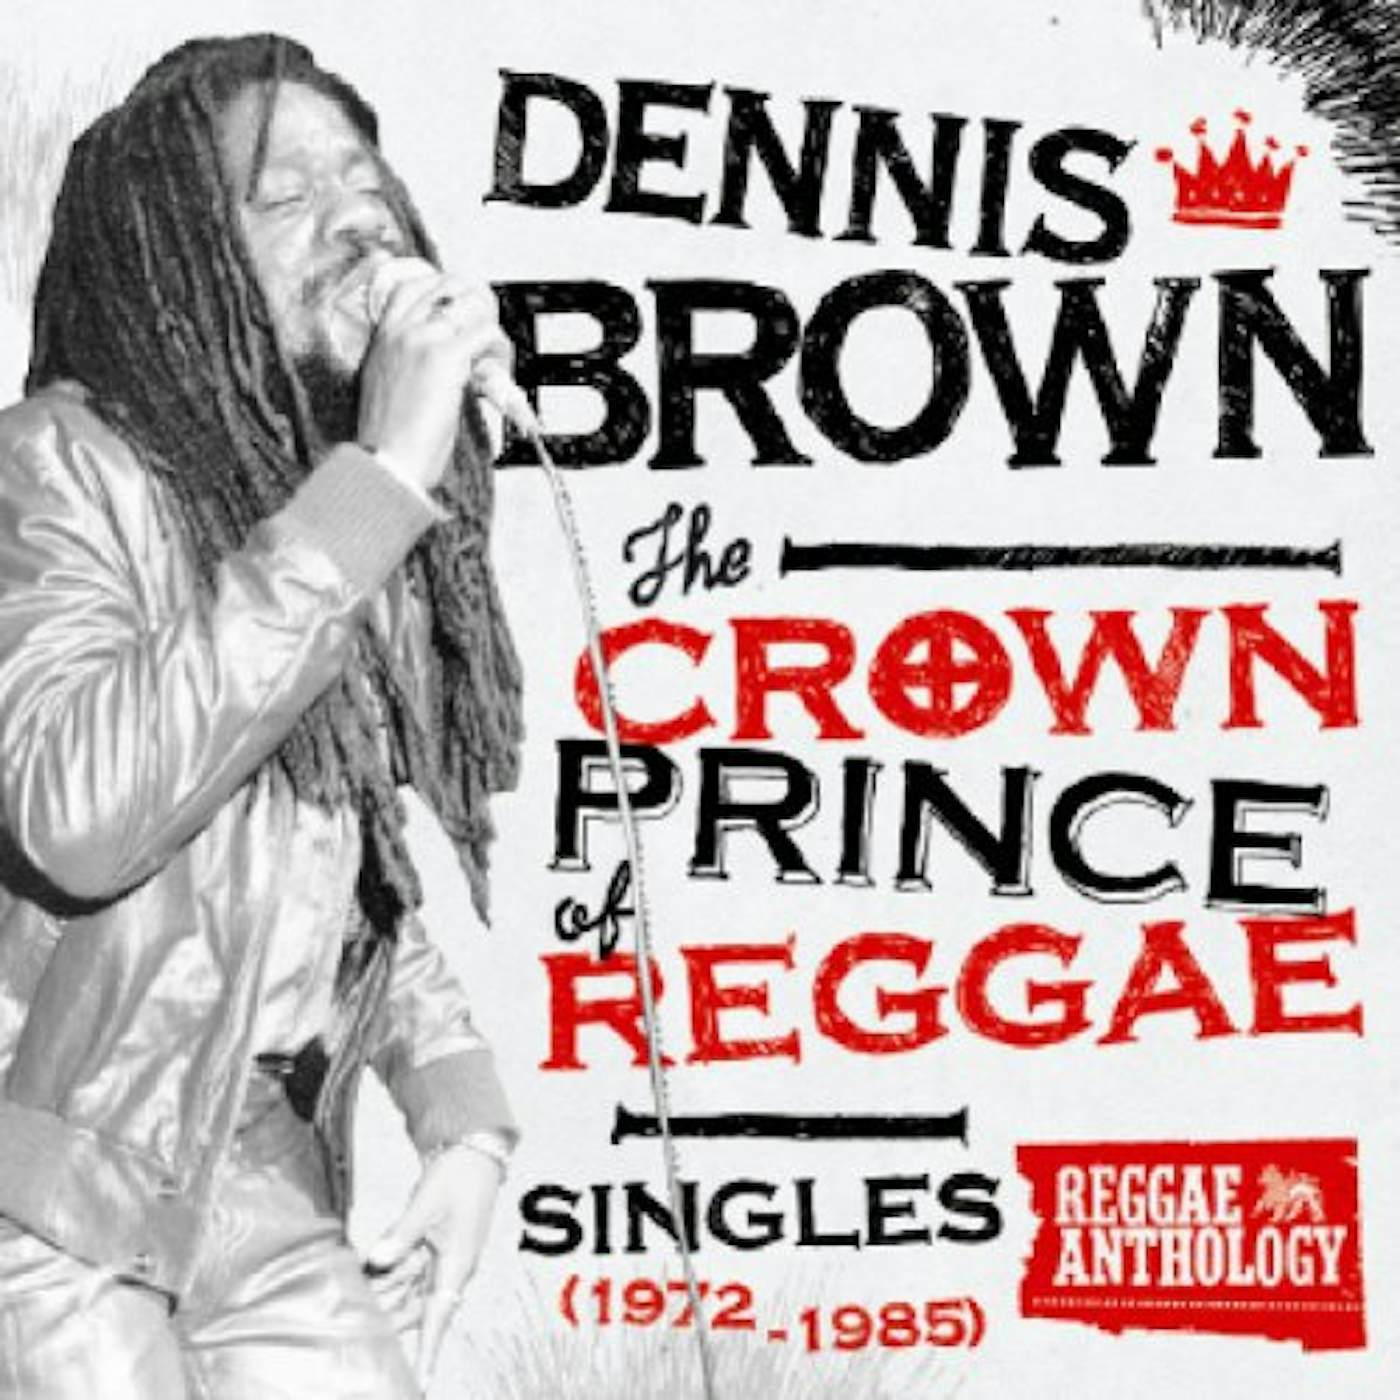 Dennis Brown CROWN PRINCE OF REGGAE SINGLES 1972-1985 Vinyl Record